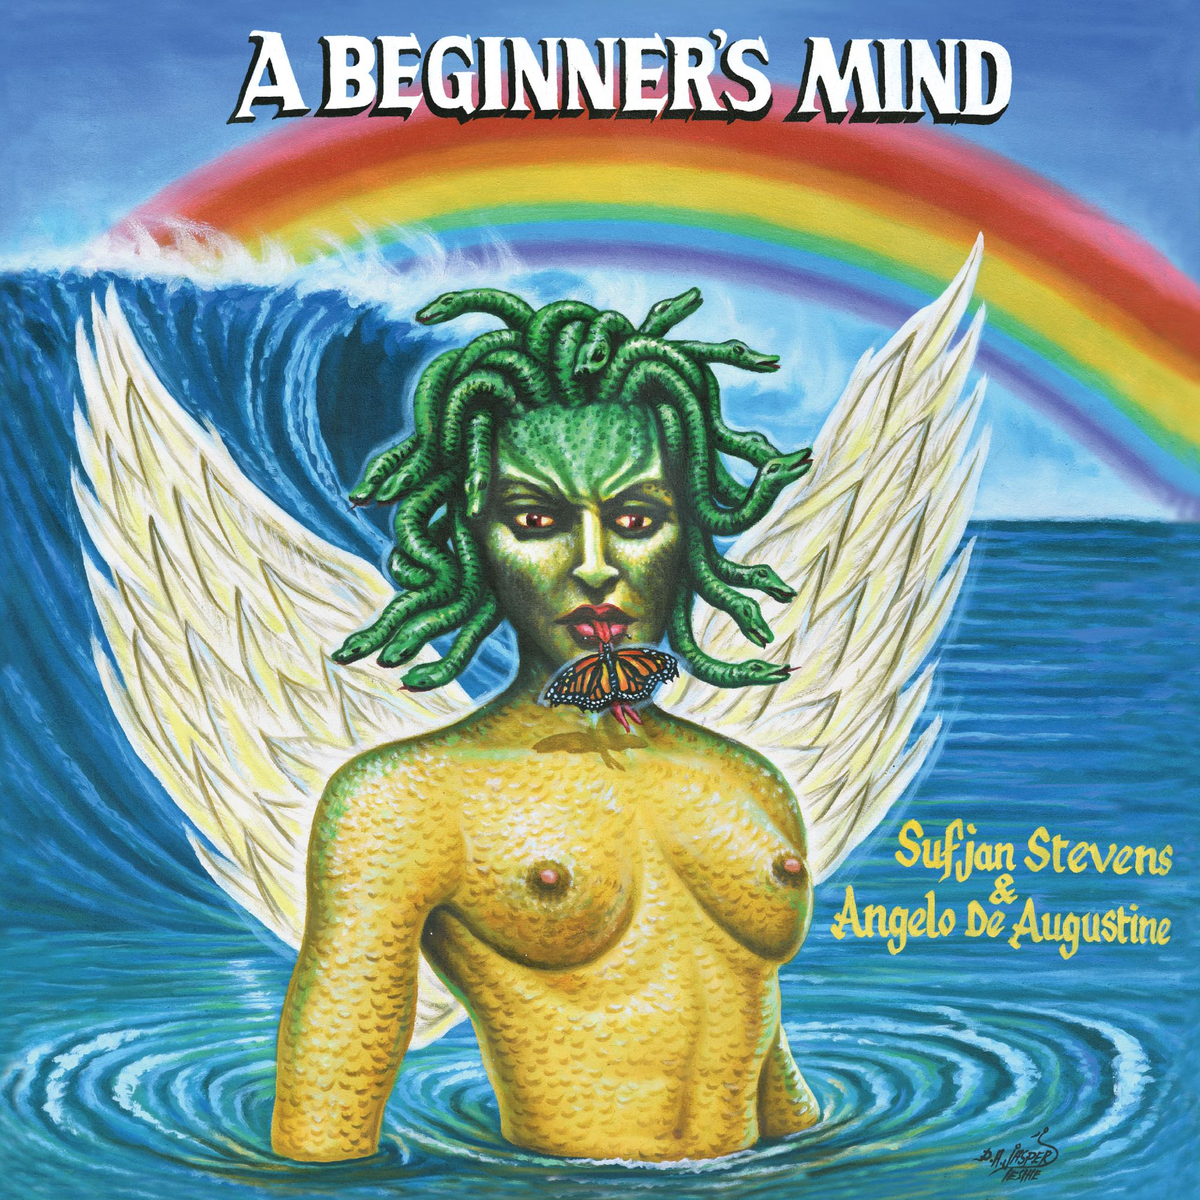 Sufjan Stevens & Angelo De Augustine - A Beginner’s Mind